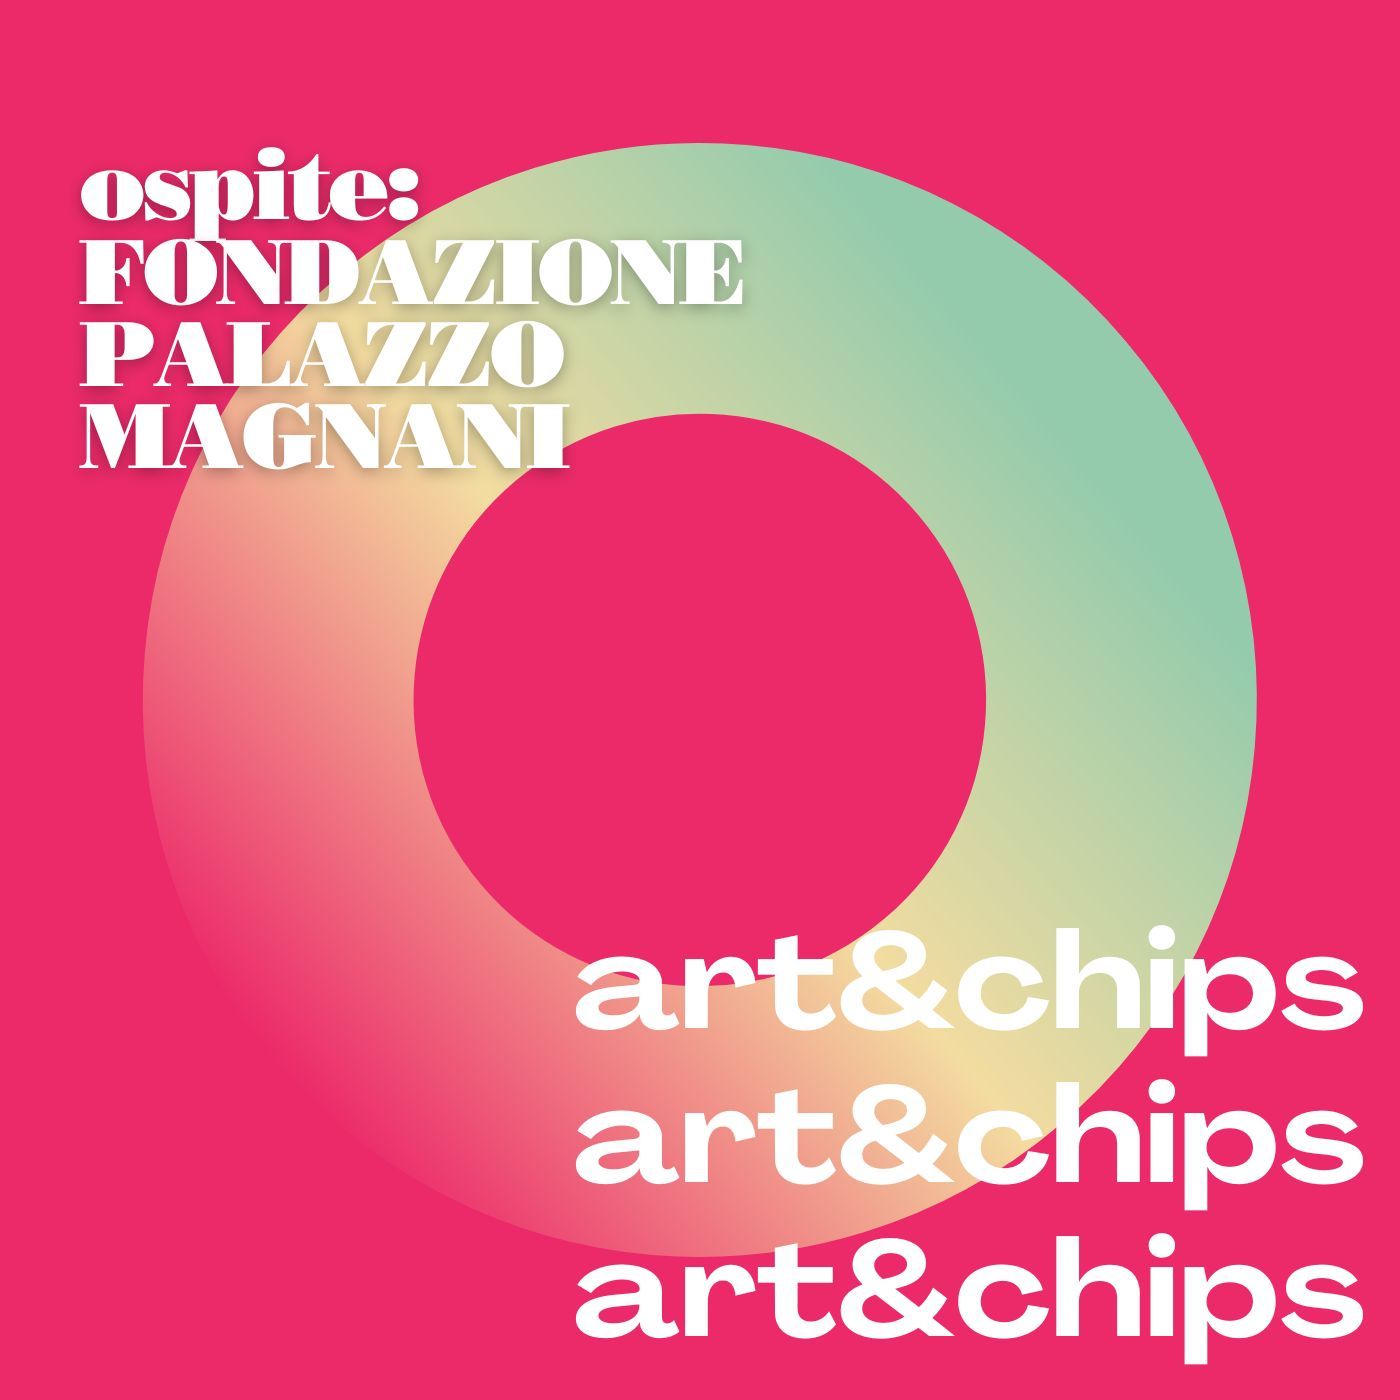 Parliamo di musei e accessibilità con Fondazione Palazzo Magnani